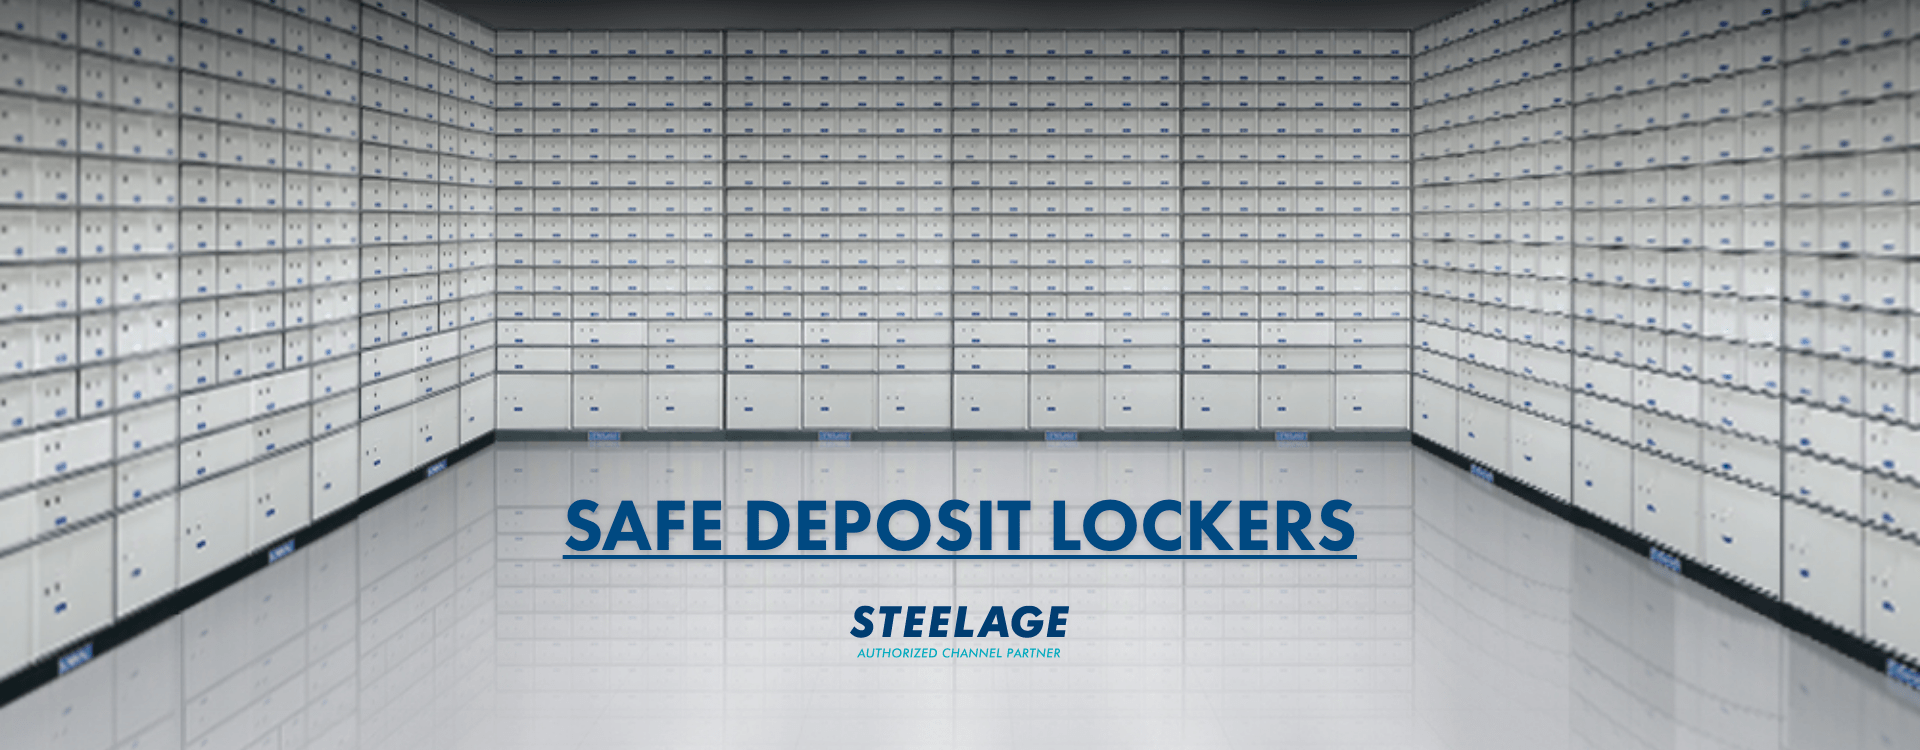 Safe deposit locker 